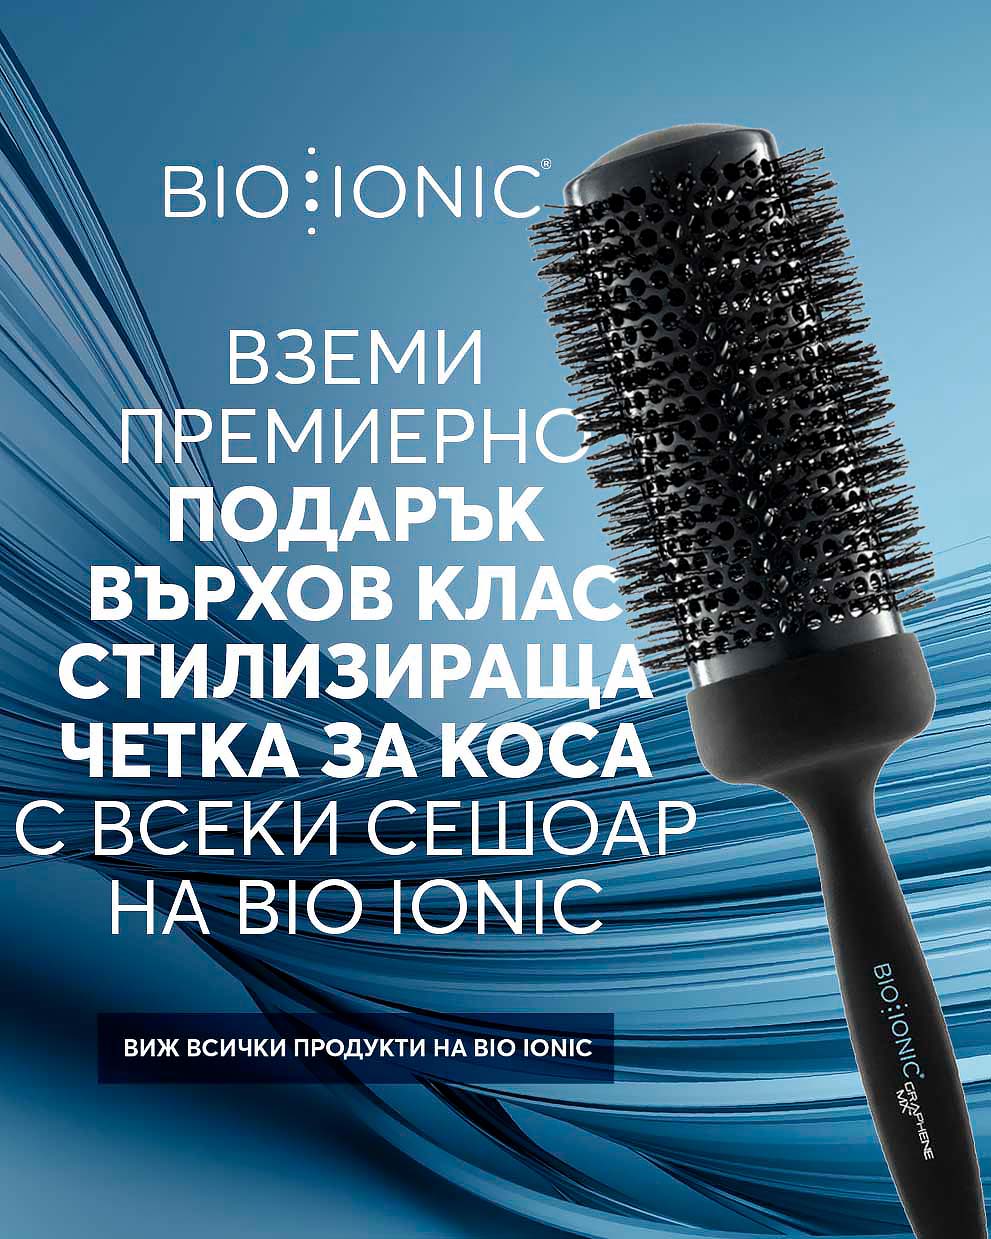 Bio Ionic Blowdryer + Free Brush Promo banner